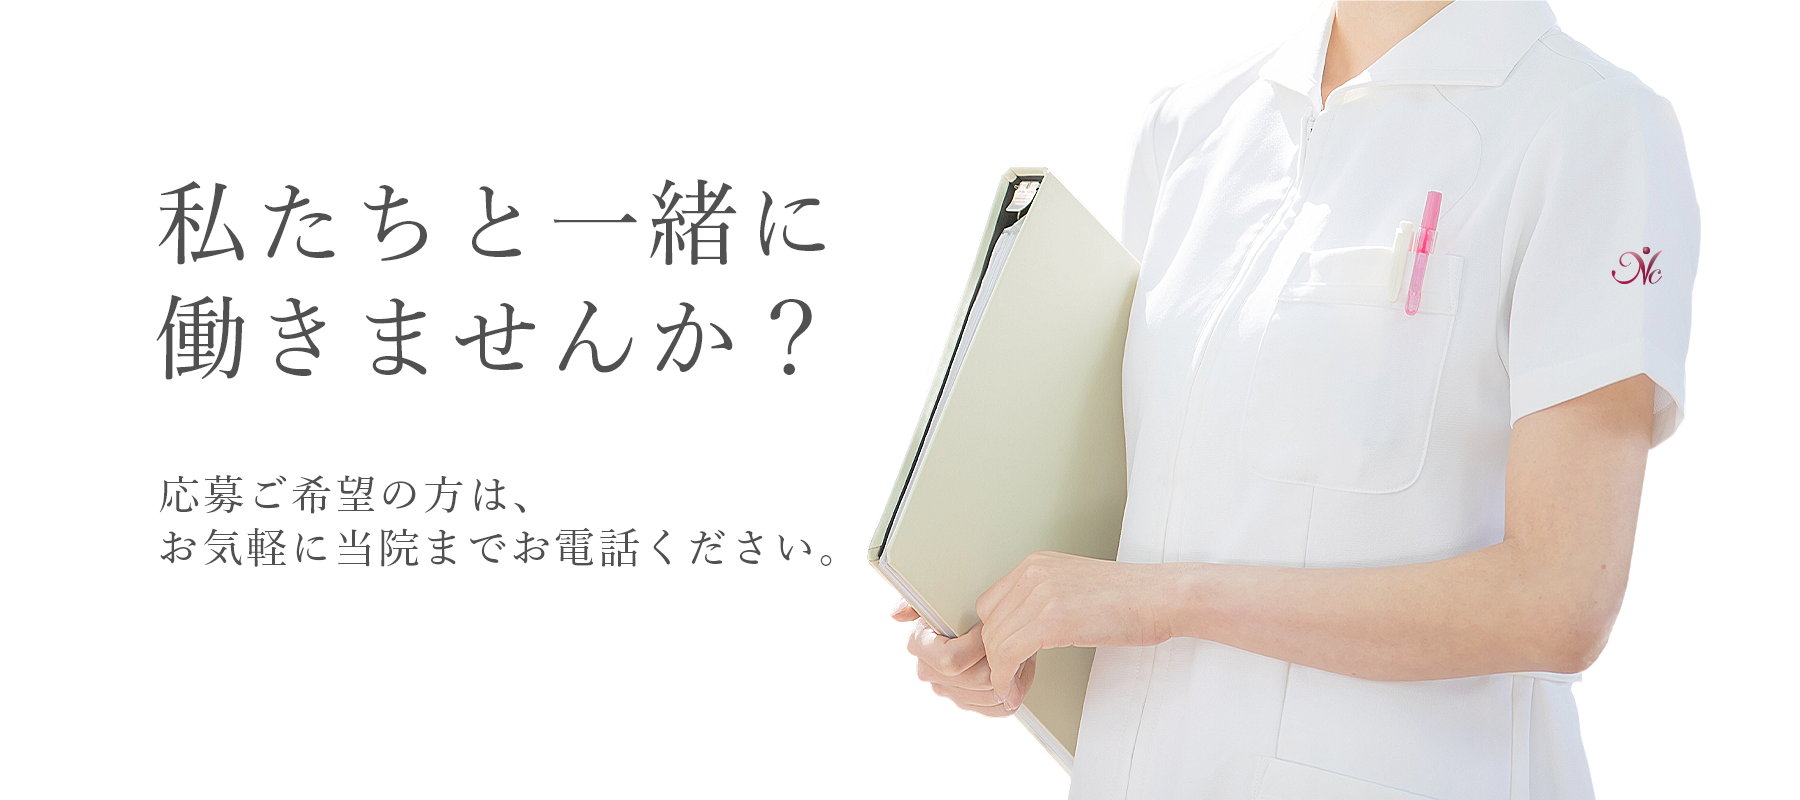 福岡の産婦人科の求人情報